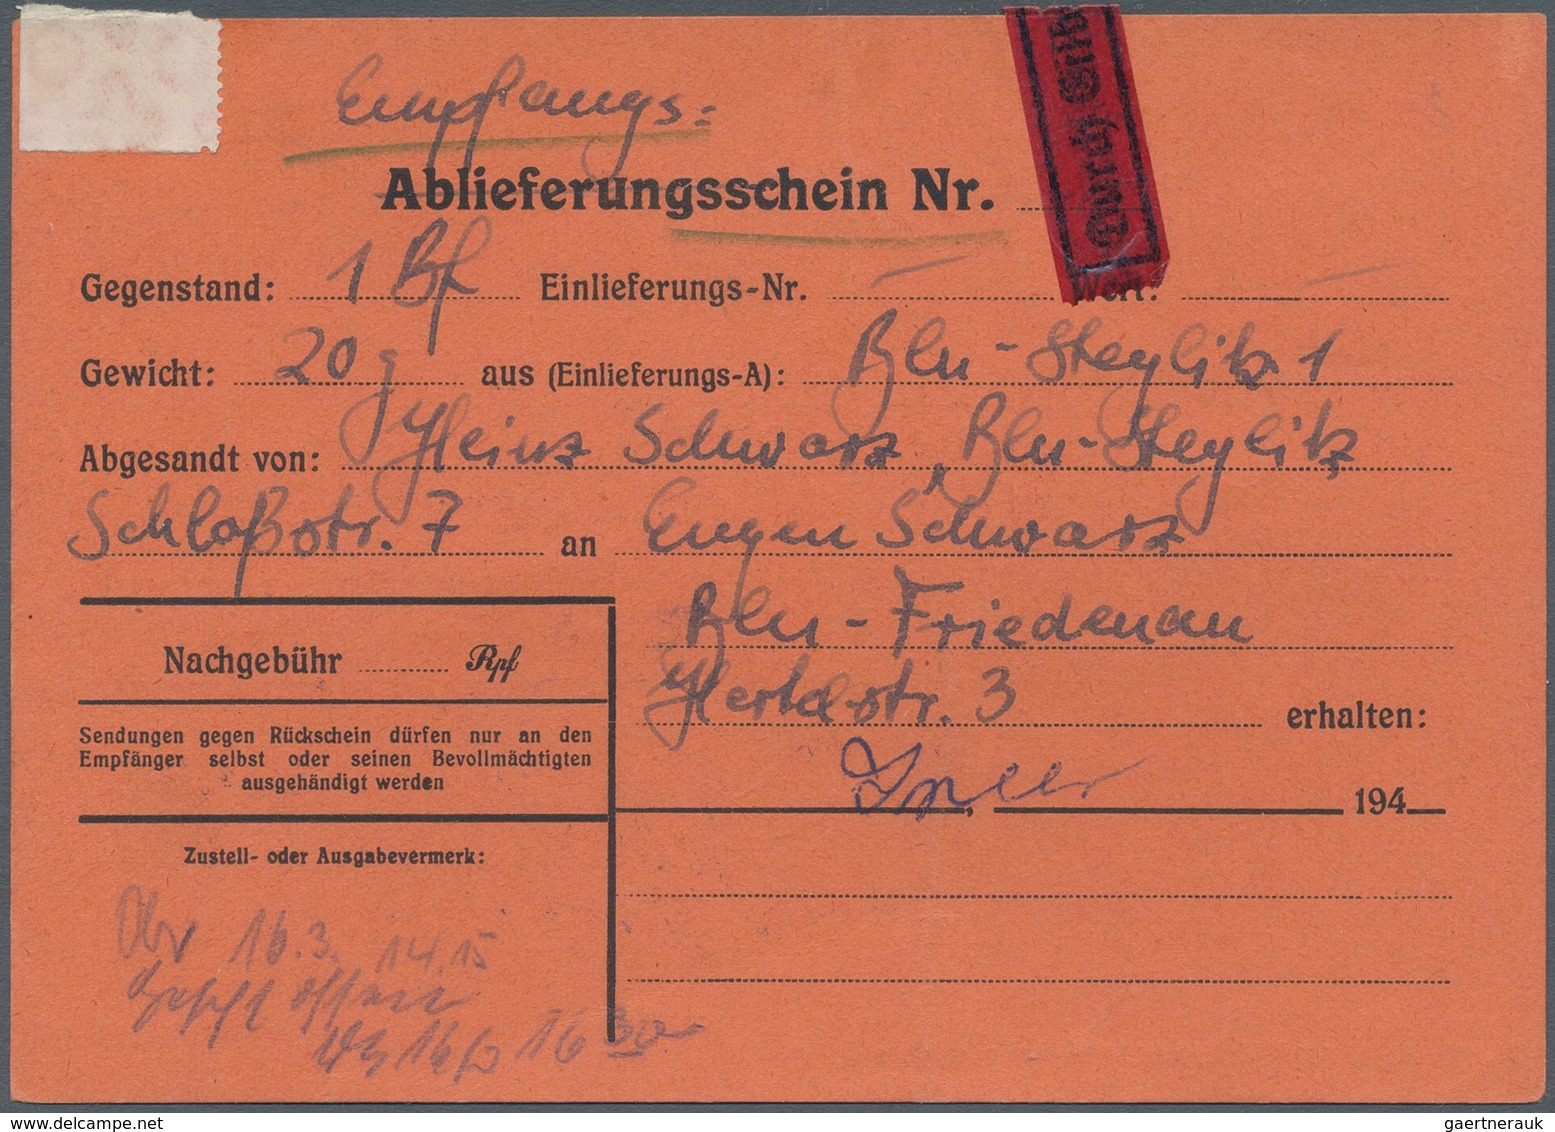 Berlin - Postschnelldienst: 5 Pf. Glocke Rechts U. Bund Angegebene Posthornwerte (vom Bogenrand) Zus - Briefe U. Dokumente